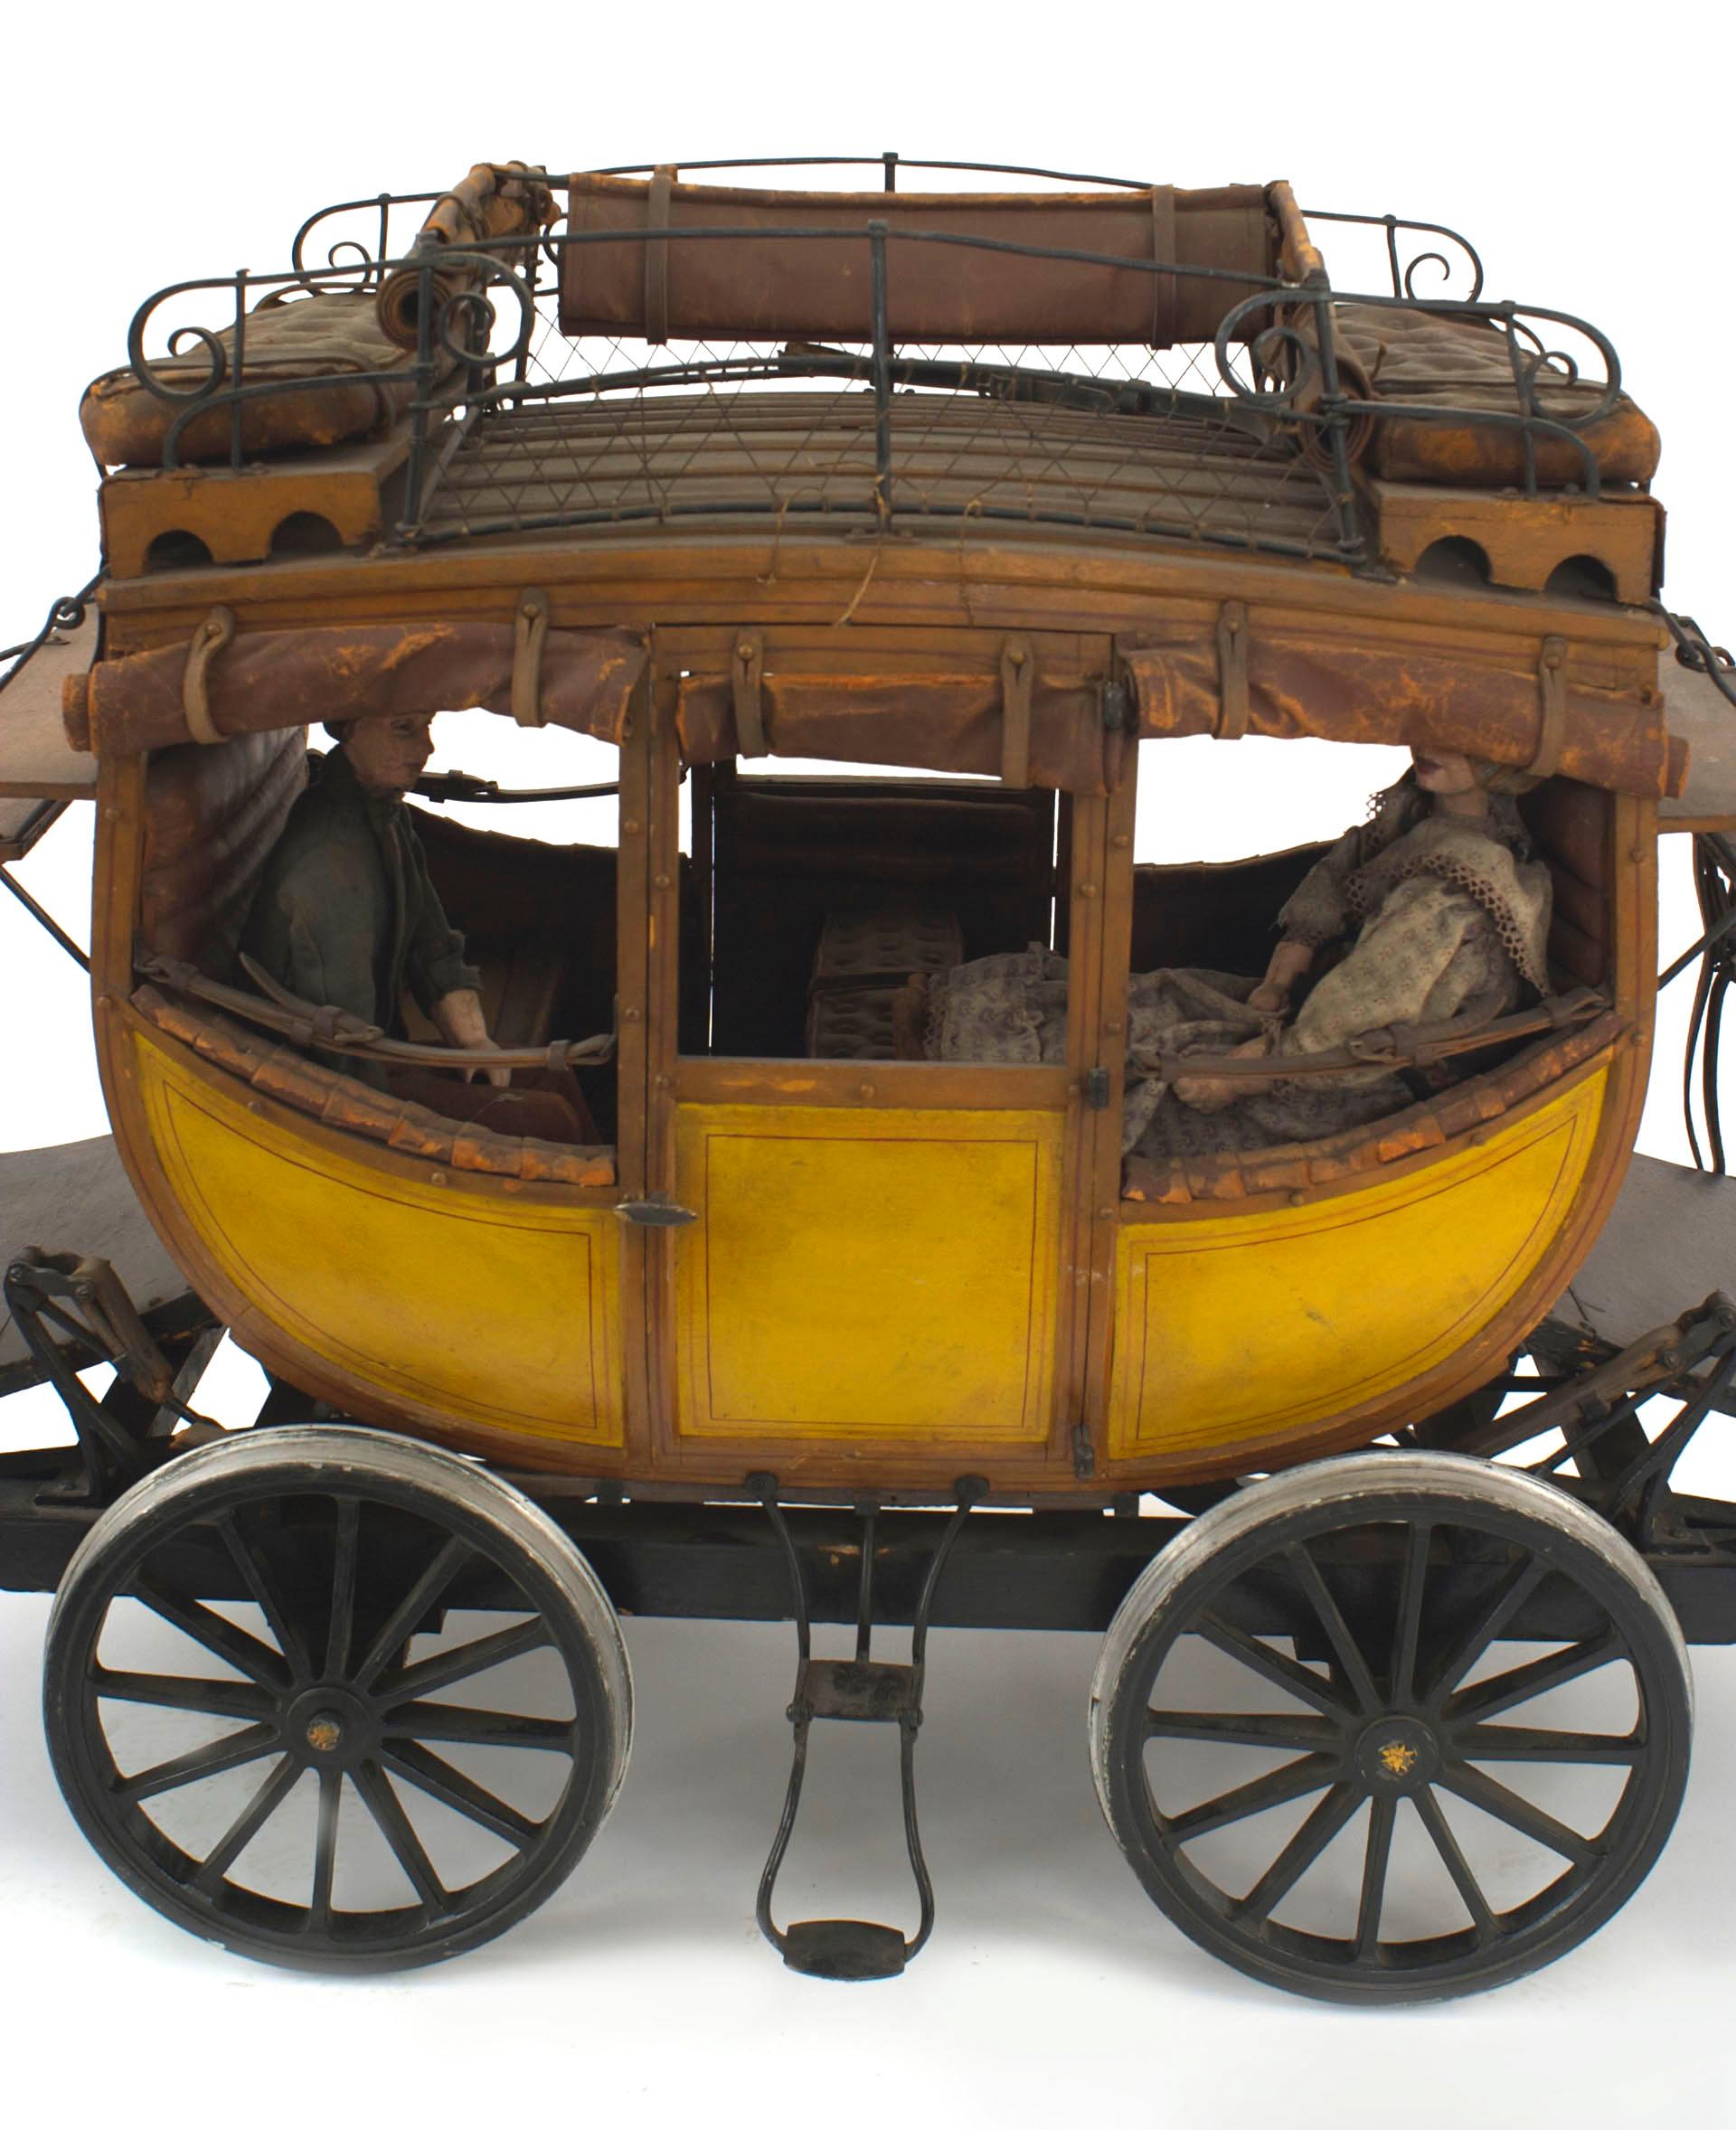 Modèle en bois peint de style country américain (20e siècle) représentant une voiture de train de Dewitt avec des personnages de poupée (voir #037074 - pièce complémentaire, machine à vapeur Stephenson's Rocket).
